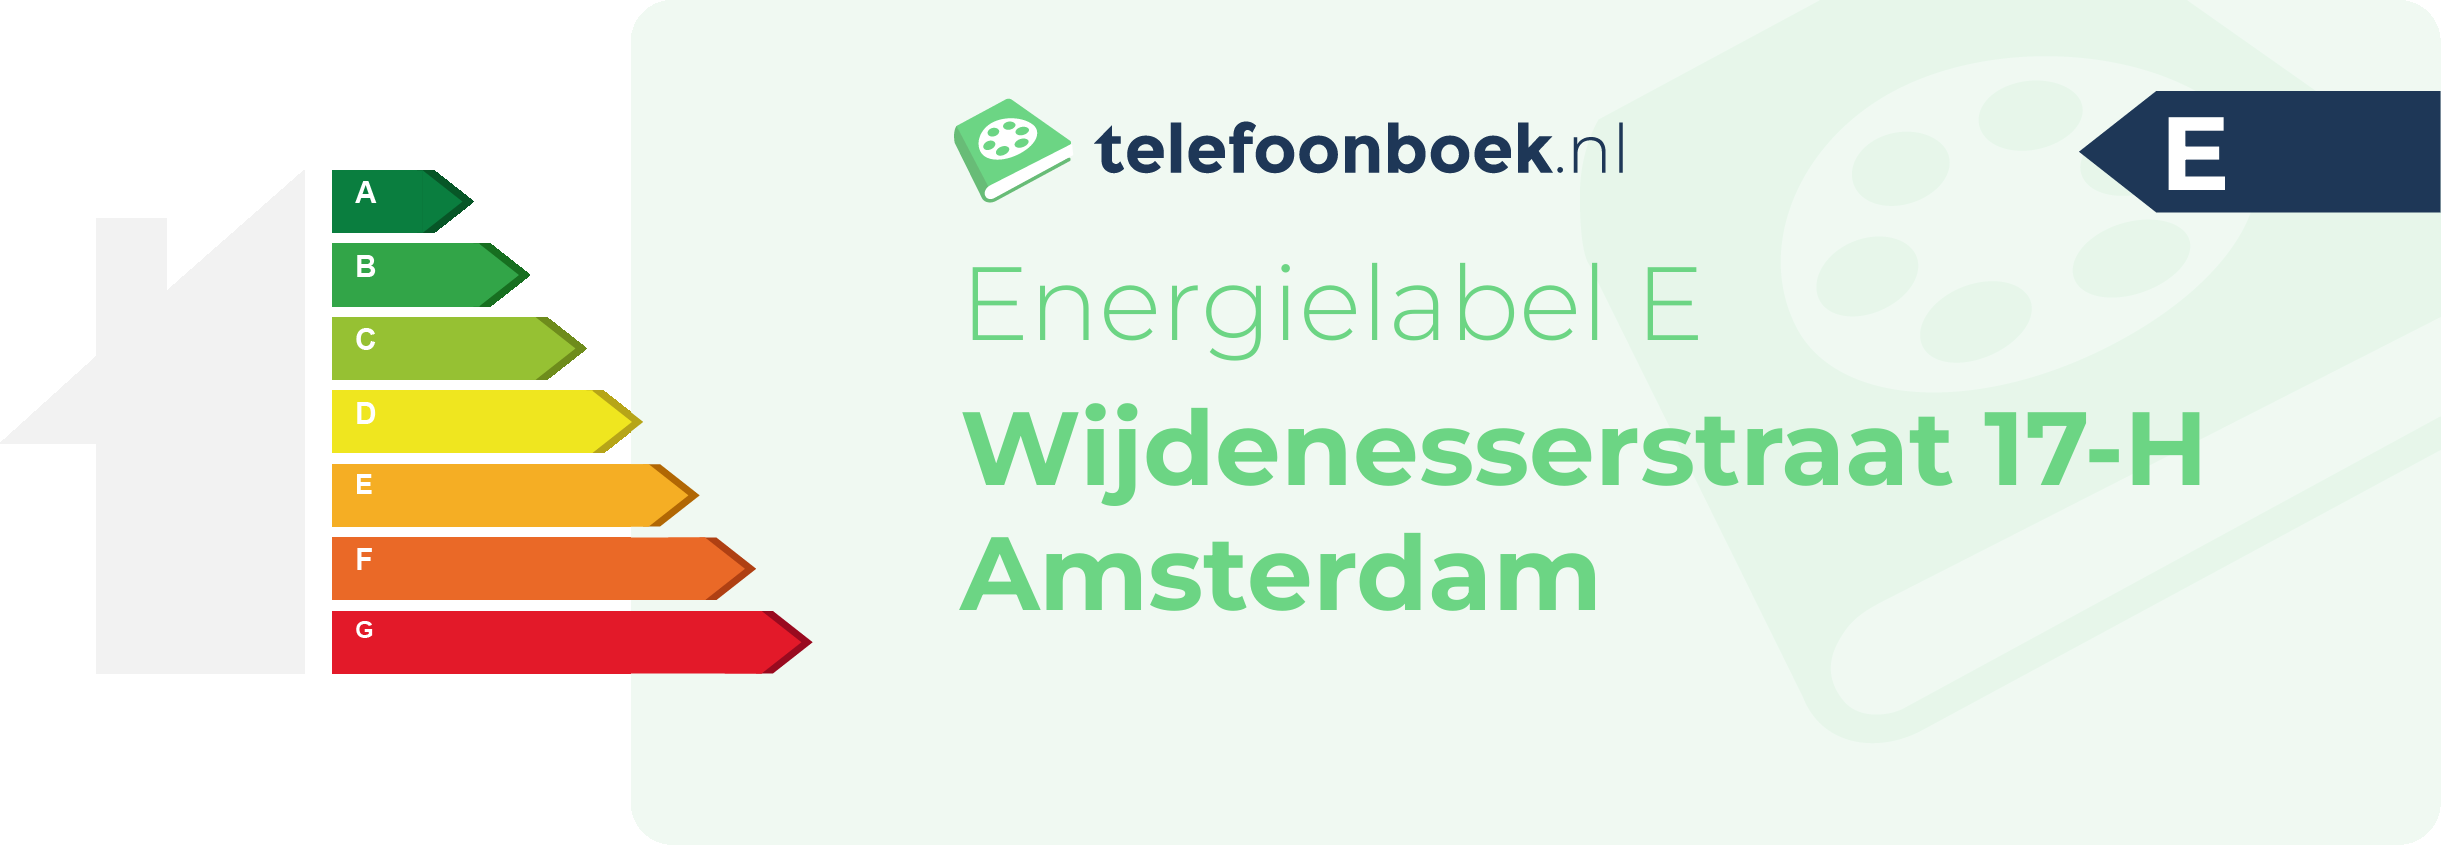 Energielabel Wijdenesserstraat 17-H Amsterdam